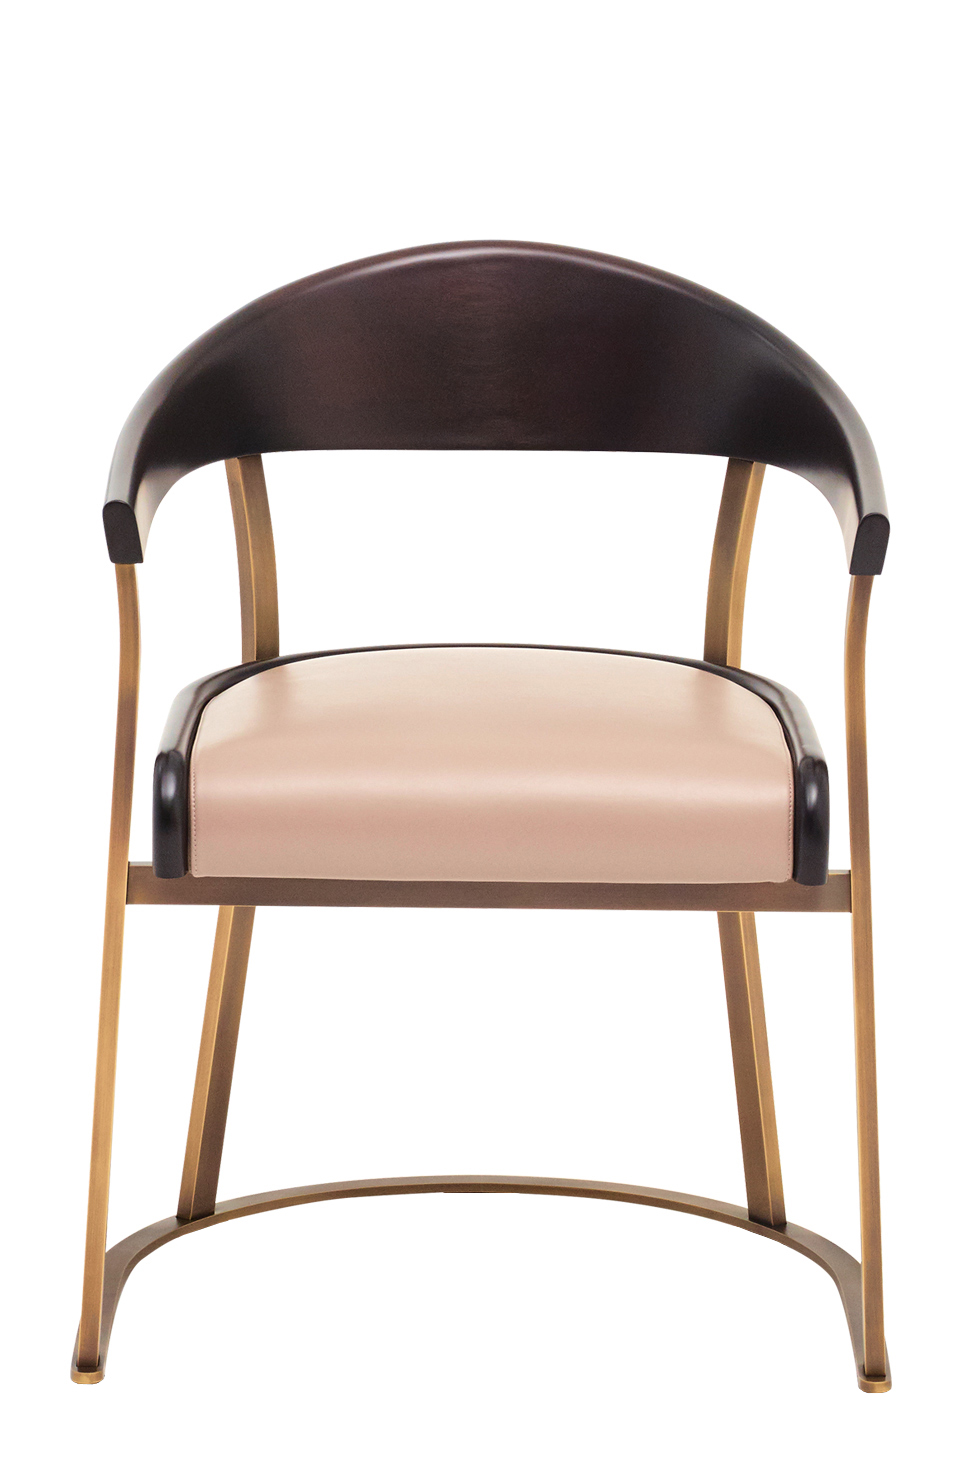 Rachele est une chaise avec accoudoirs en bronze, dossier en bois ou cuir et assise en cuir. Ce meuble figure dans le catalogue Promemoria | Promemoria